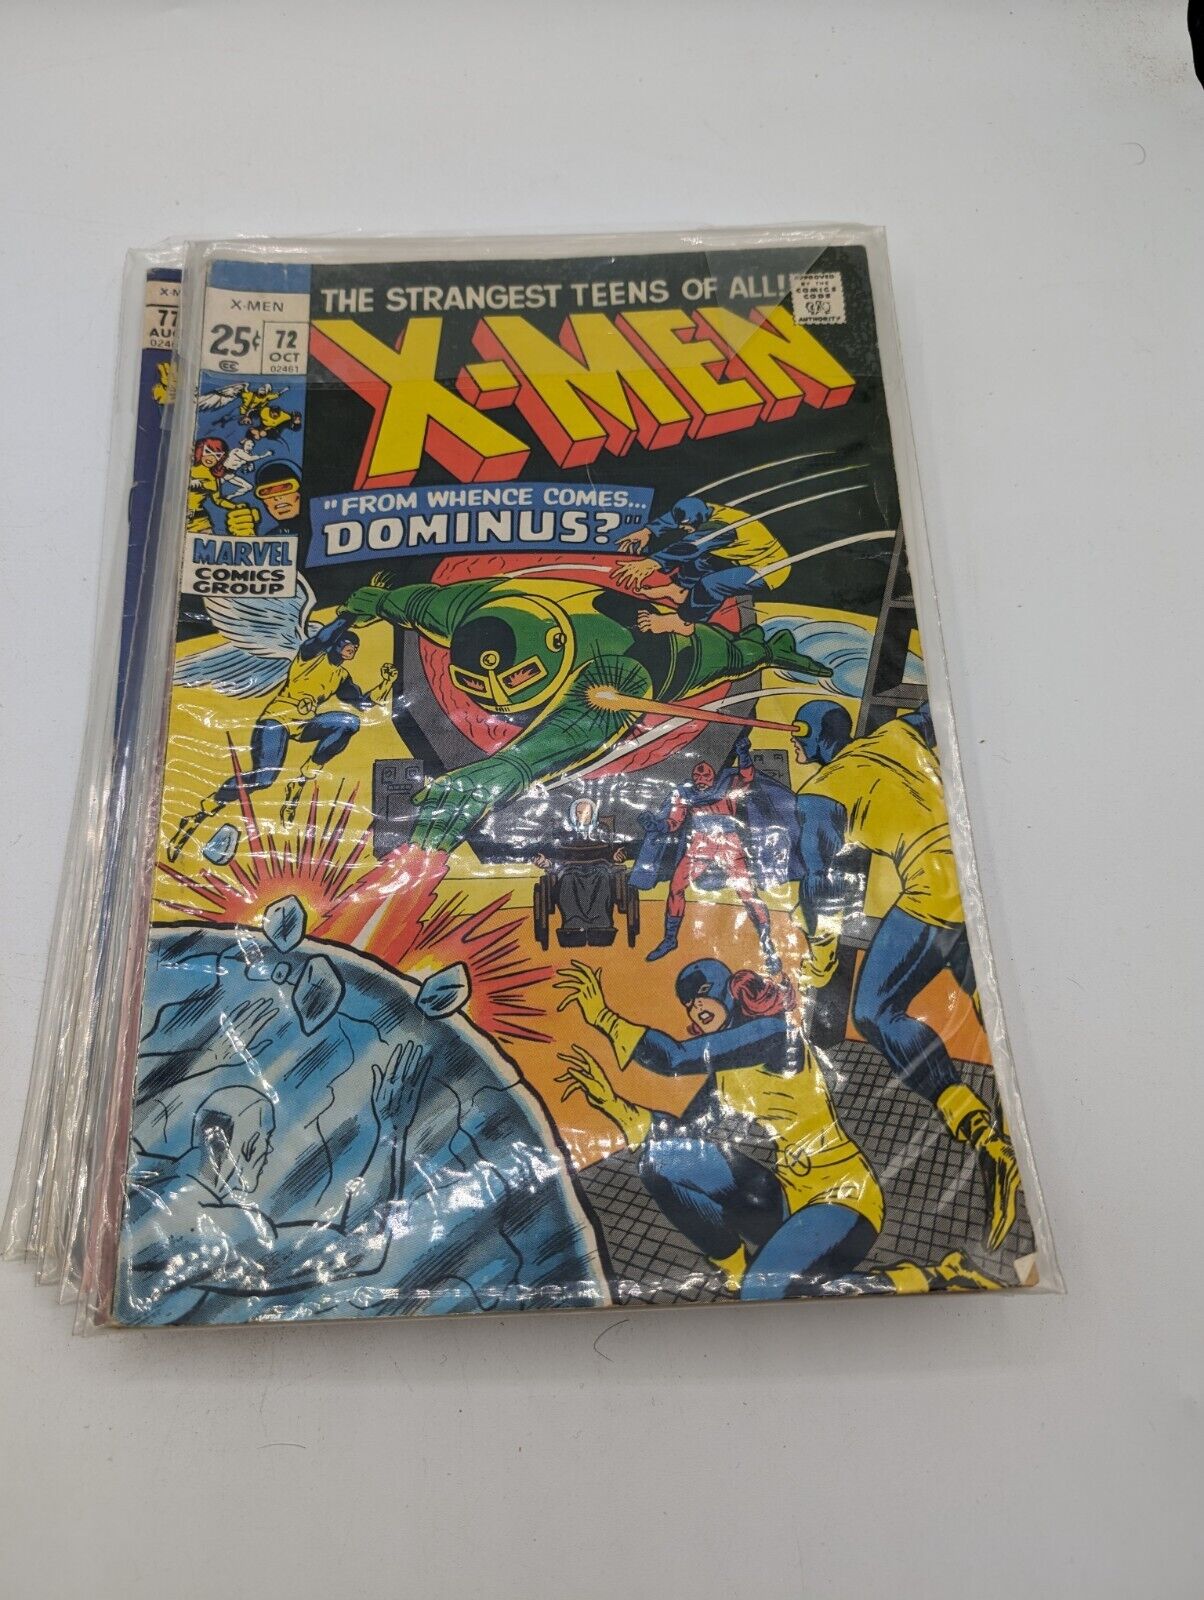 X-Men #72, Marvel Comics, 1971. Dominus, Magneto. Original, Authentic.